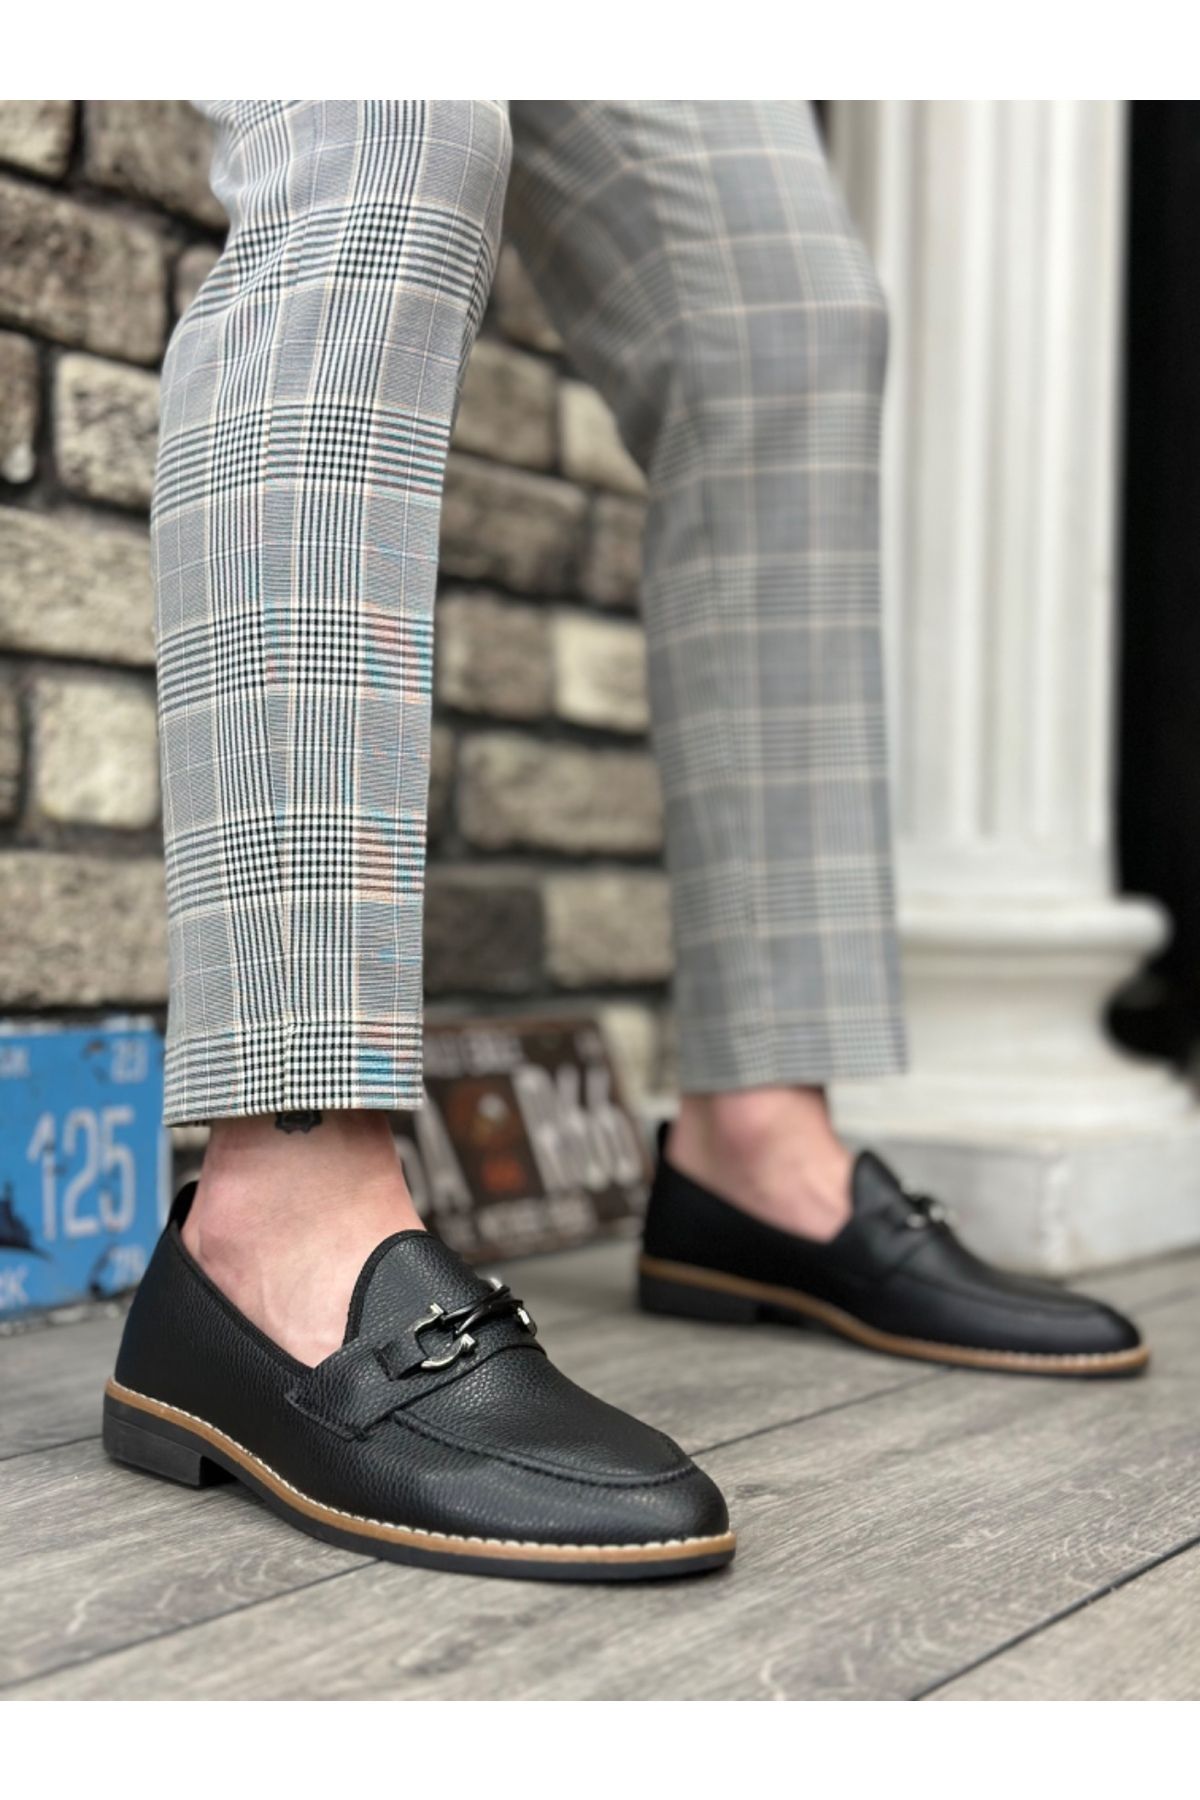 BOA BA0009 Cilt Püsküllü Corcik Siyah Çengel Tokalı Klasik Erkek Ayakkabısı